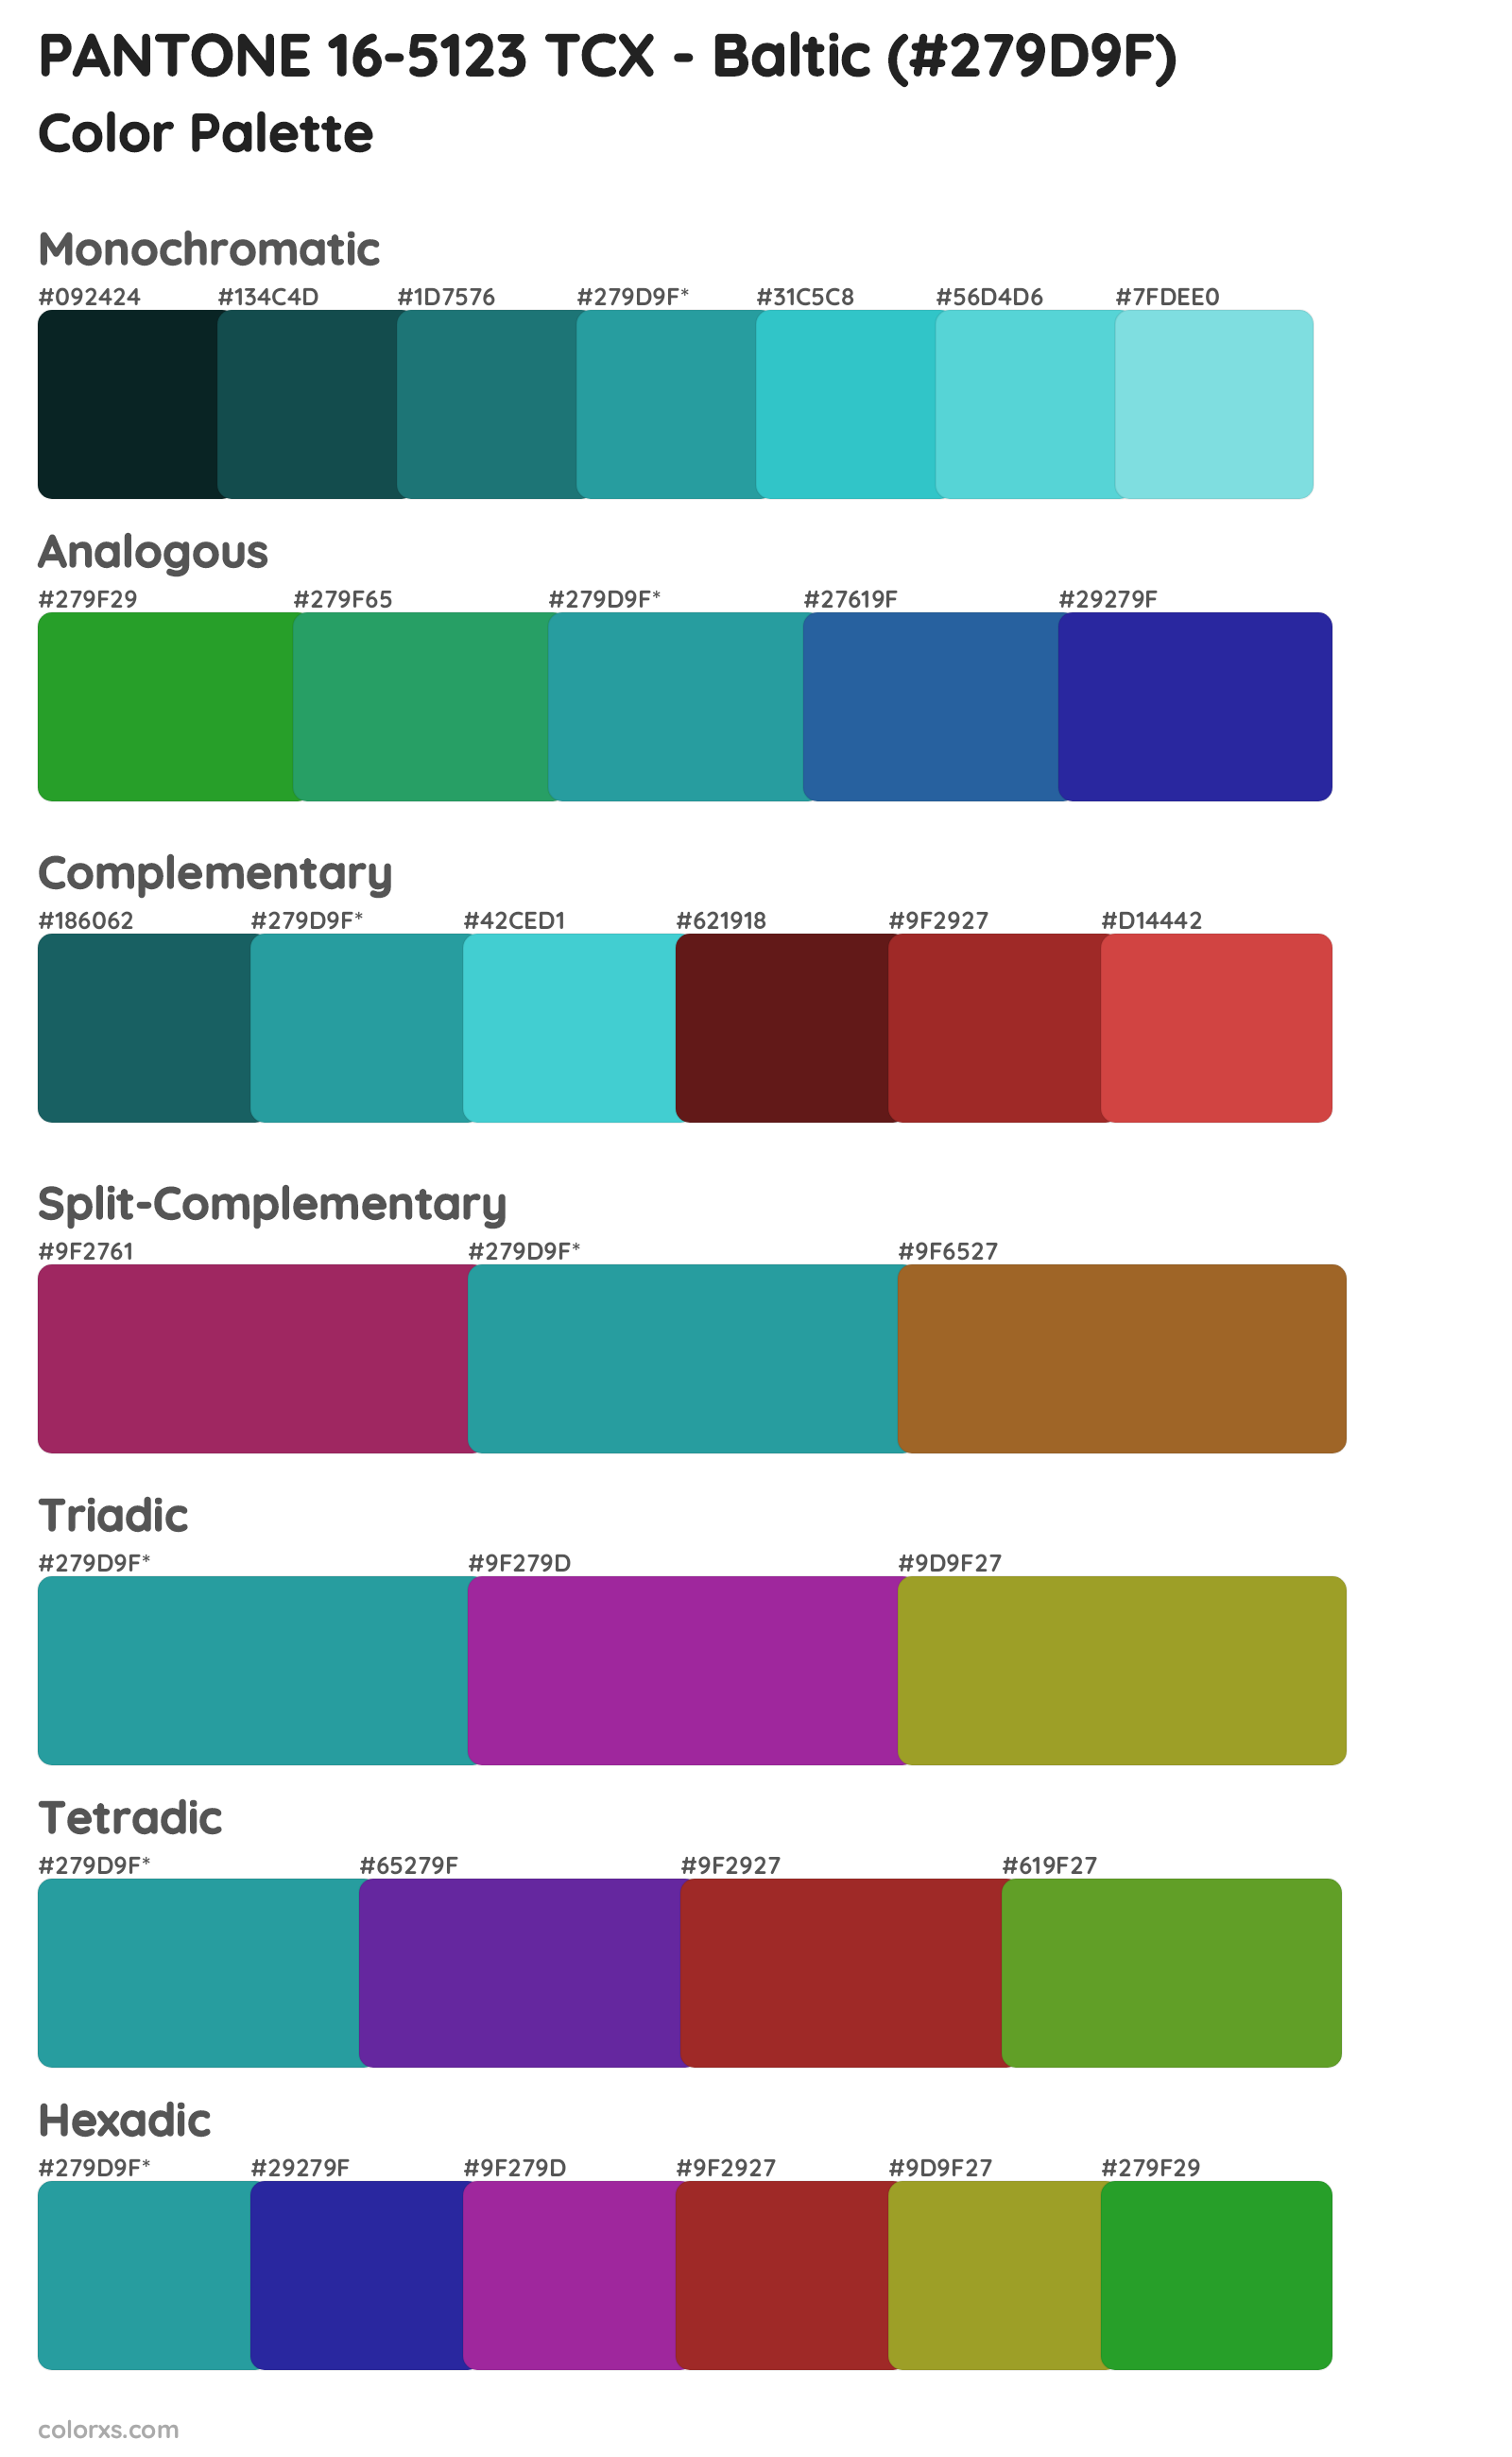 PANTONE 16-5123 TCX - Baltic Color Scheme Palettes